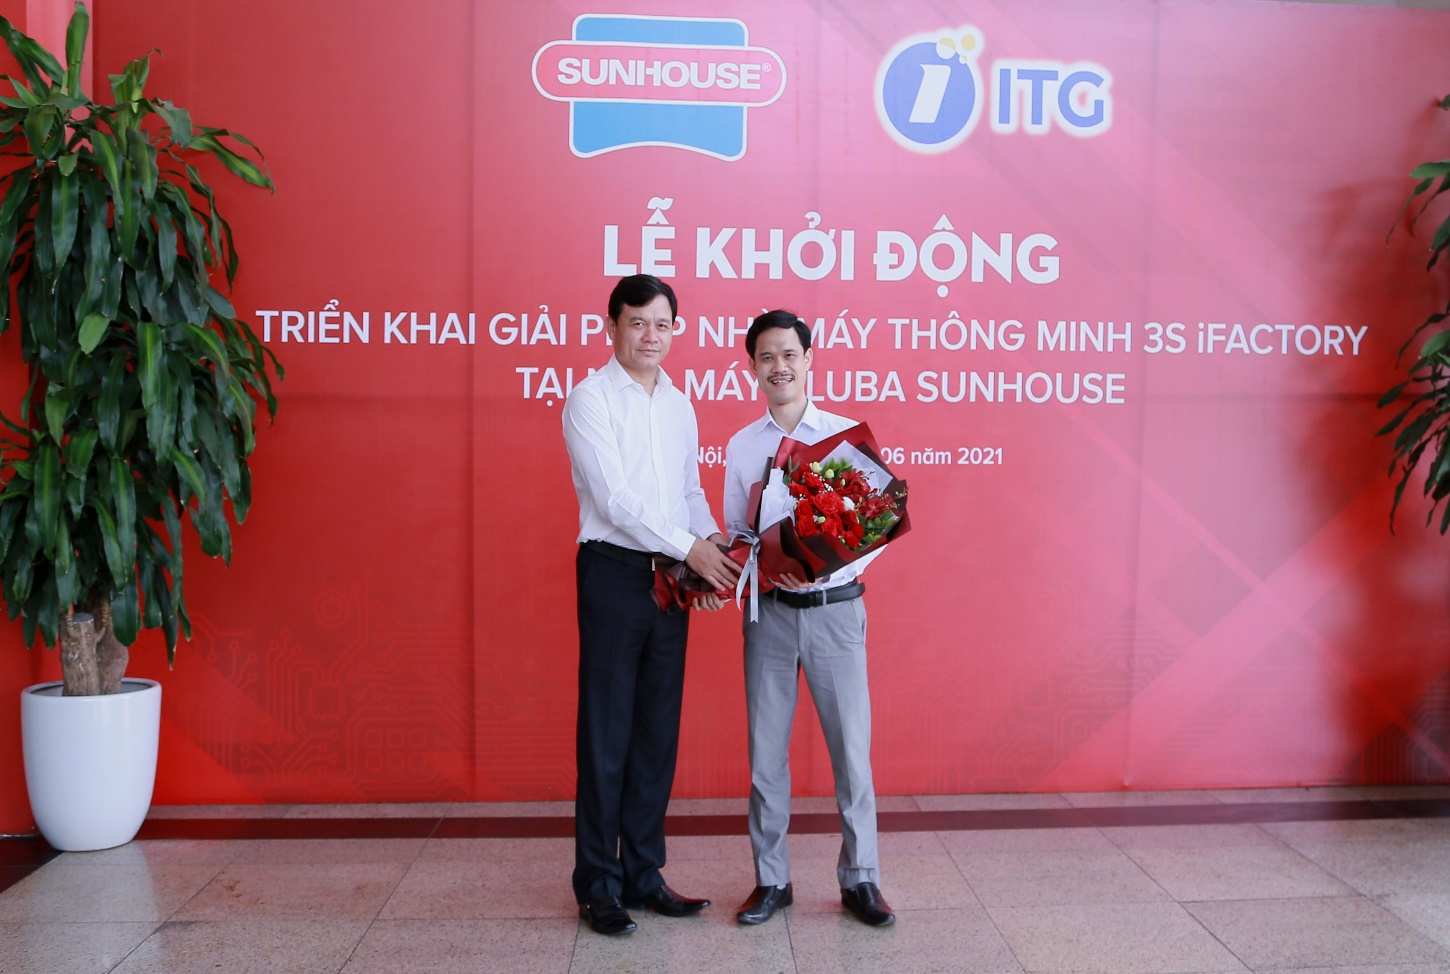 Ông Nguyễn Xuân Phú trong lễ triển khai giải pháp nhà máy thông minh 3S IFACTORY